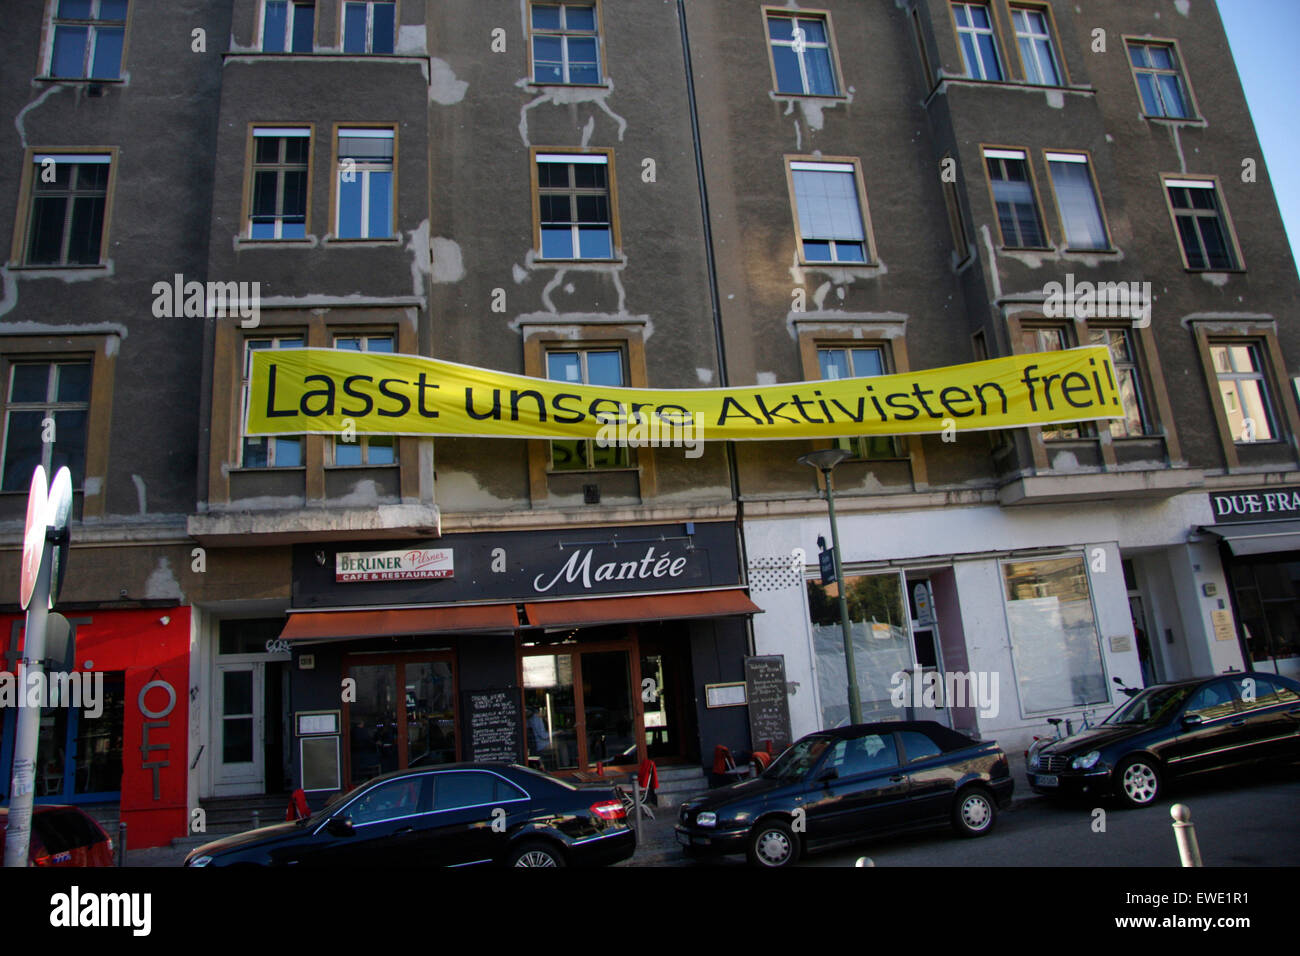 Settembre 28, 2013 - BERLINO: 'Lasst unsere Aktivisten frei!" (il rilascio dei nostri attivisti!') - proteste di Greenpeace contro la Russia a Foto Stock